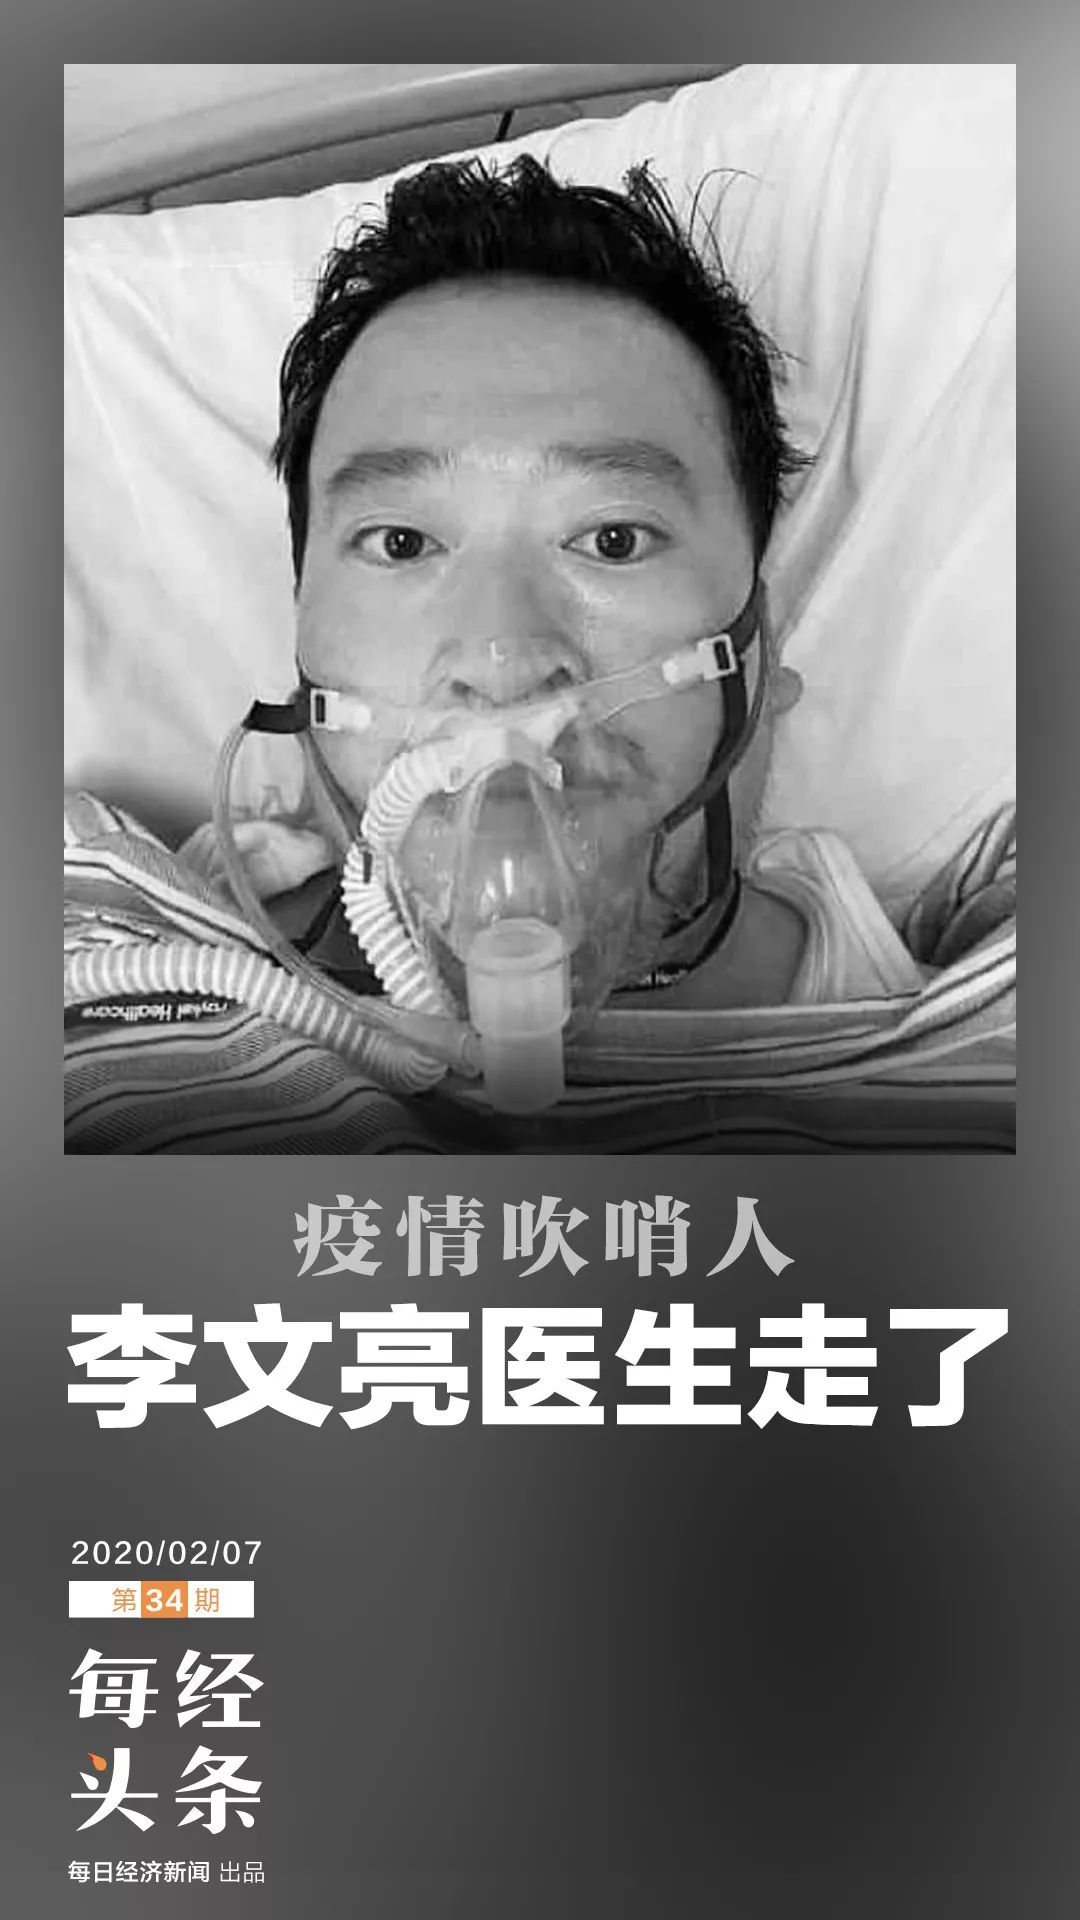 “文亮不醒，我们不睡”，李文亮医生还是走了，武汉市政府：我们深表哀悼，万分惋惜！|病毒性肺炎